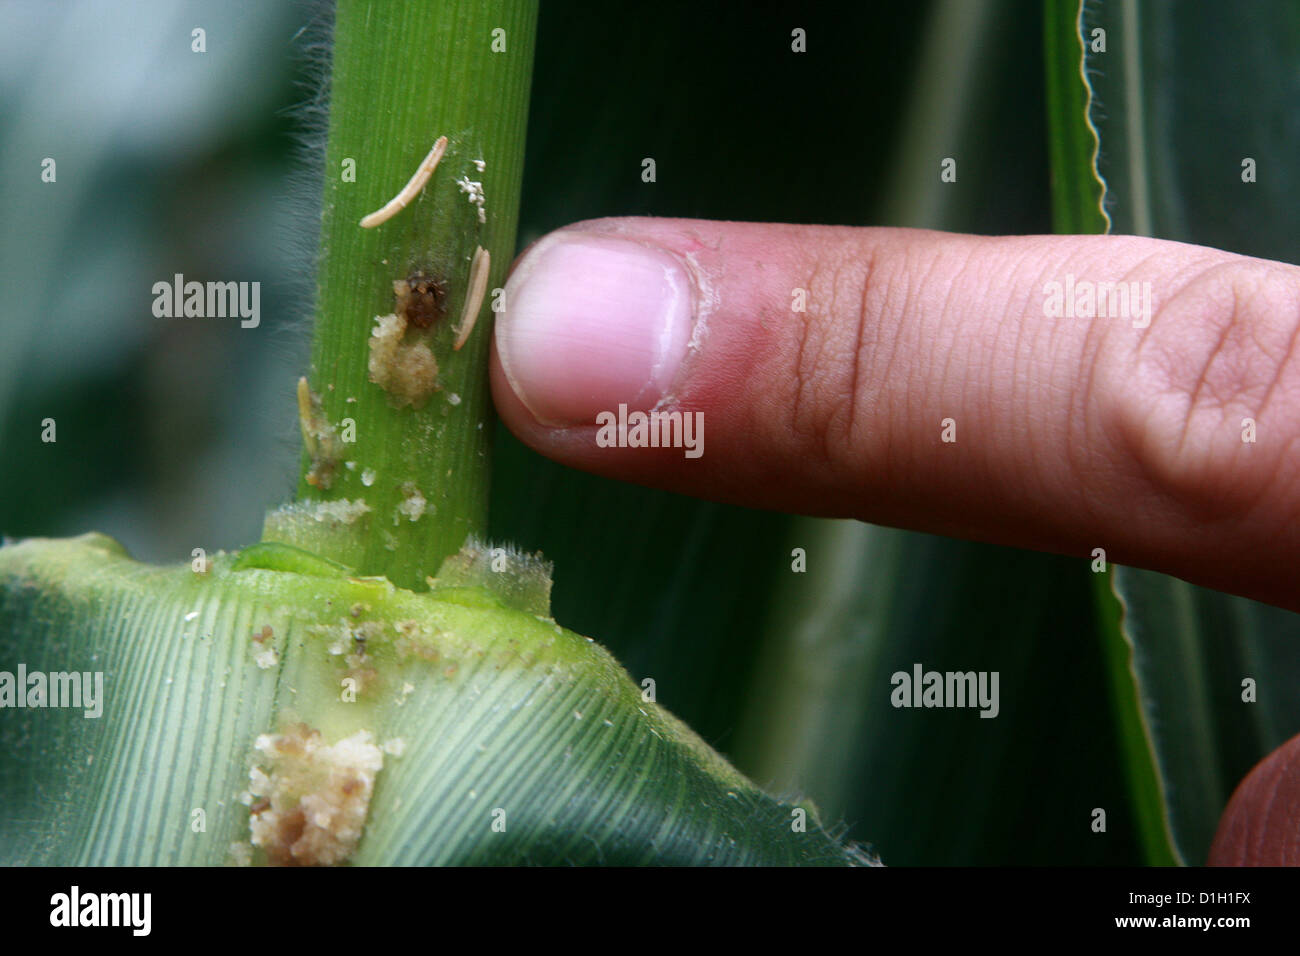 Corn injury by European corn borer (Ostrinia nubialis) Stock Photo